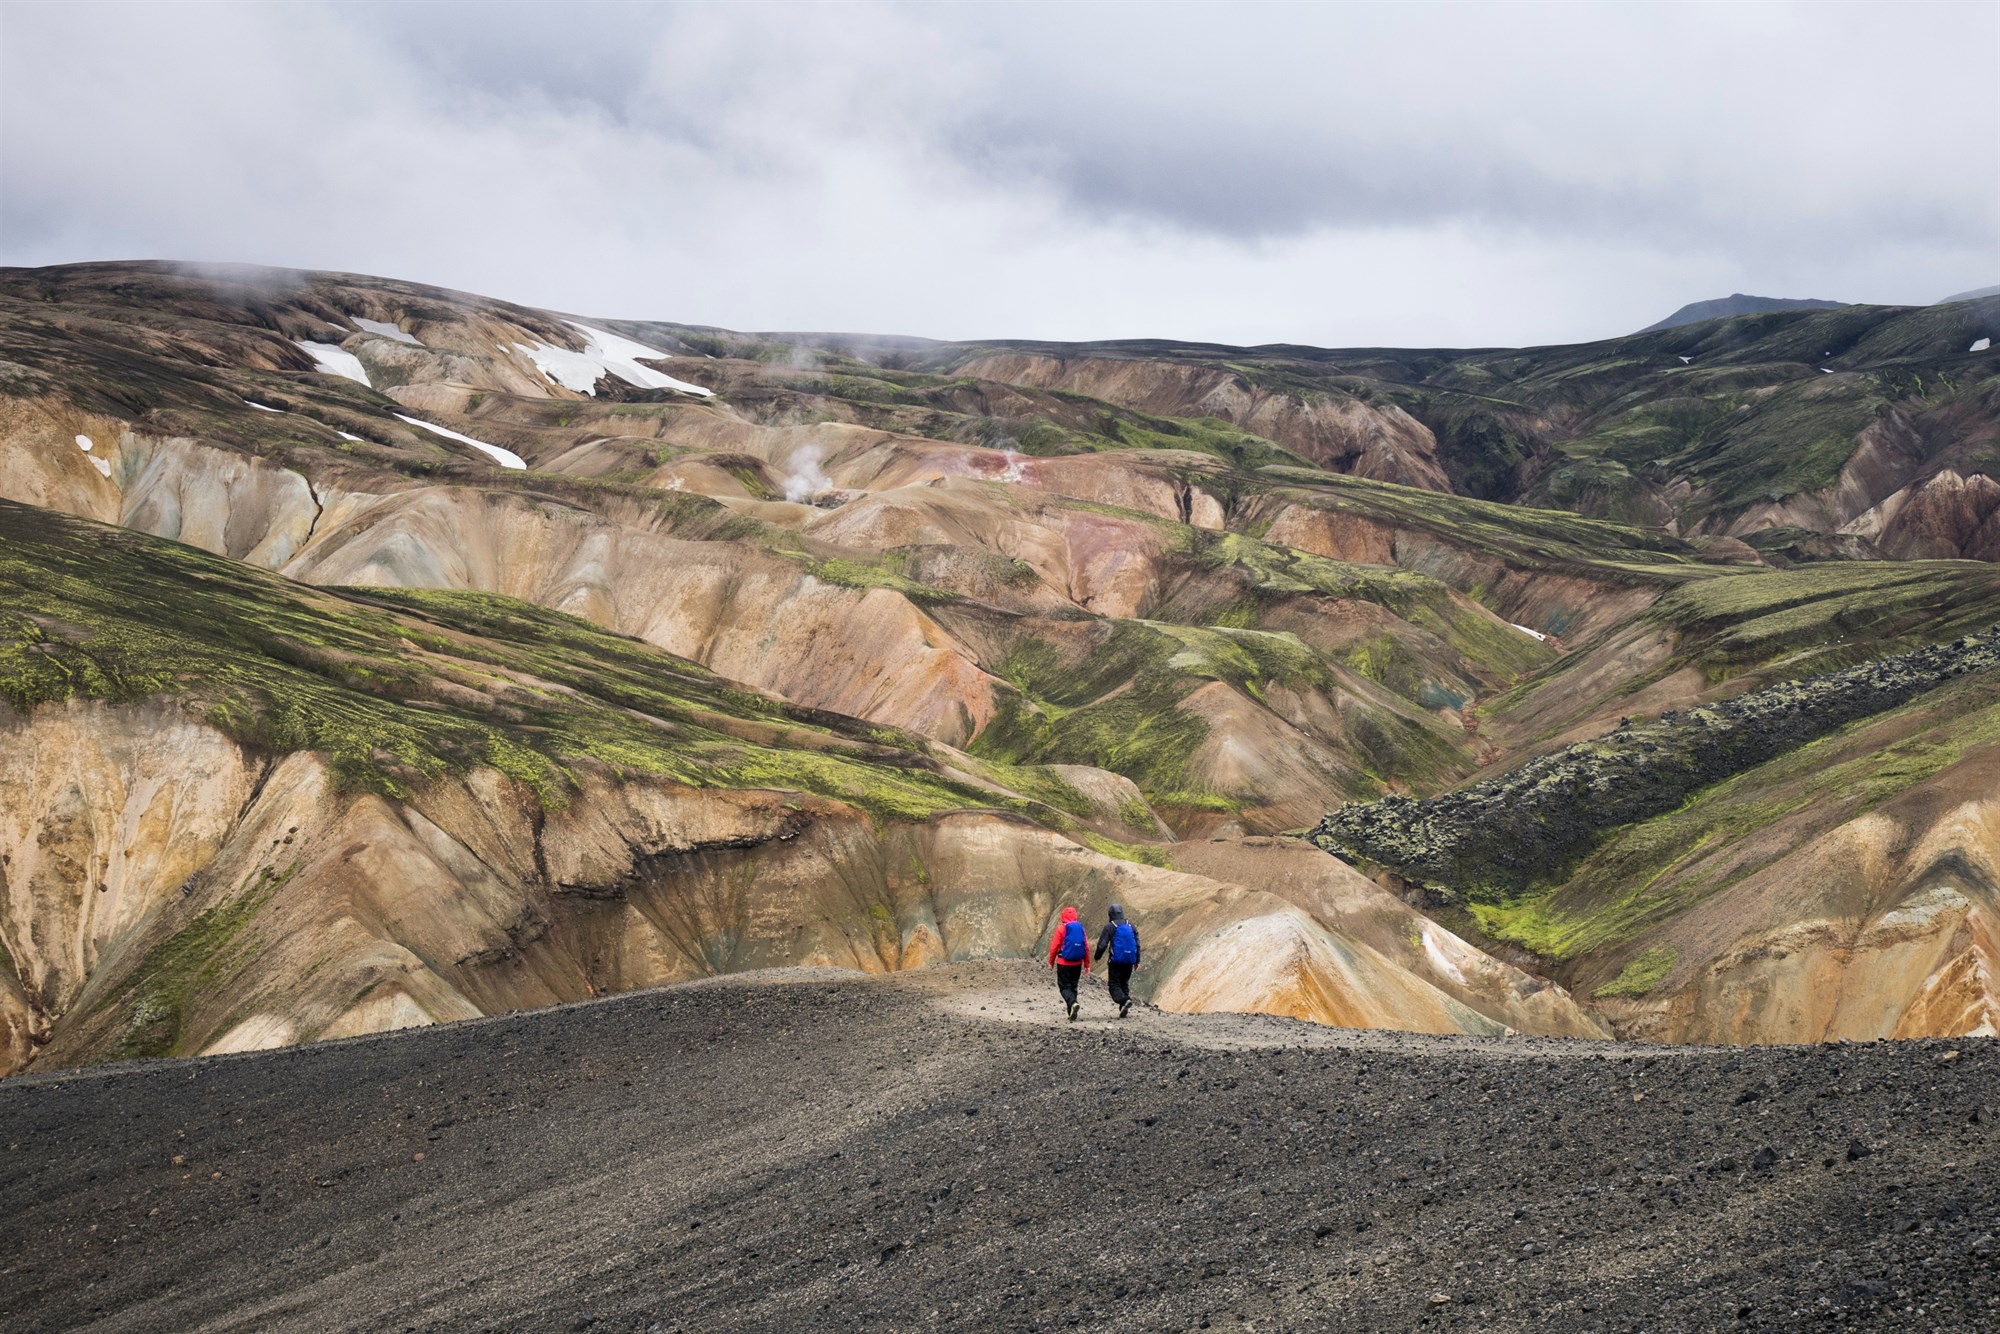 2 people hiking across natural mountains in Landmannalaugar, Iceland 